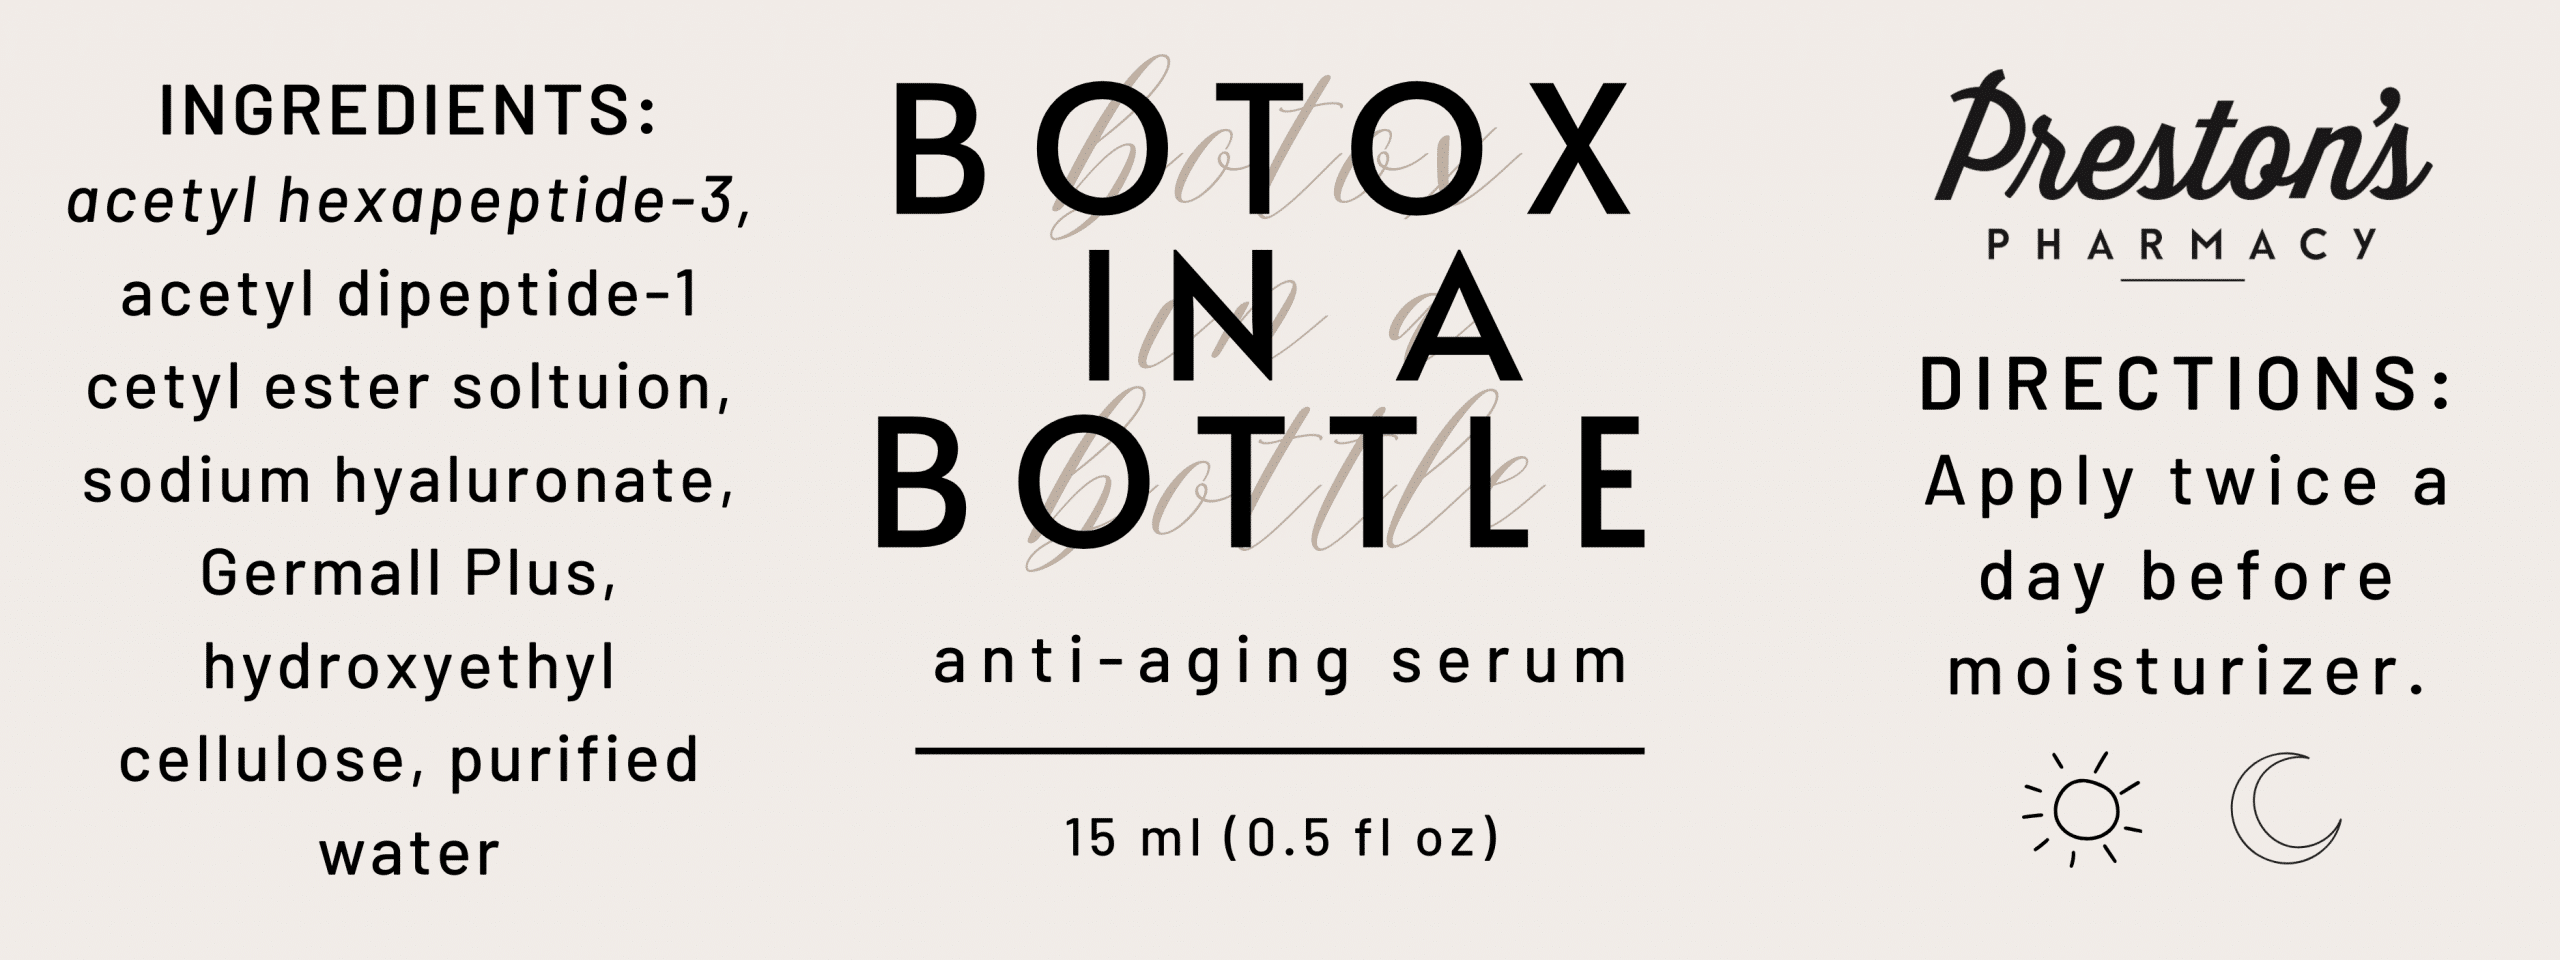 botox in a bottle